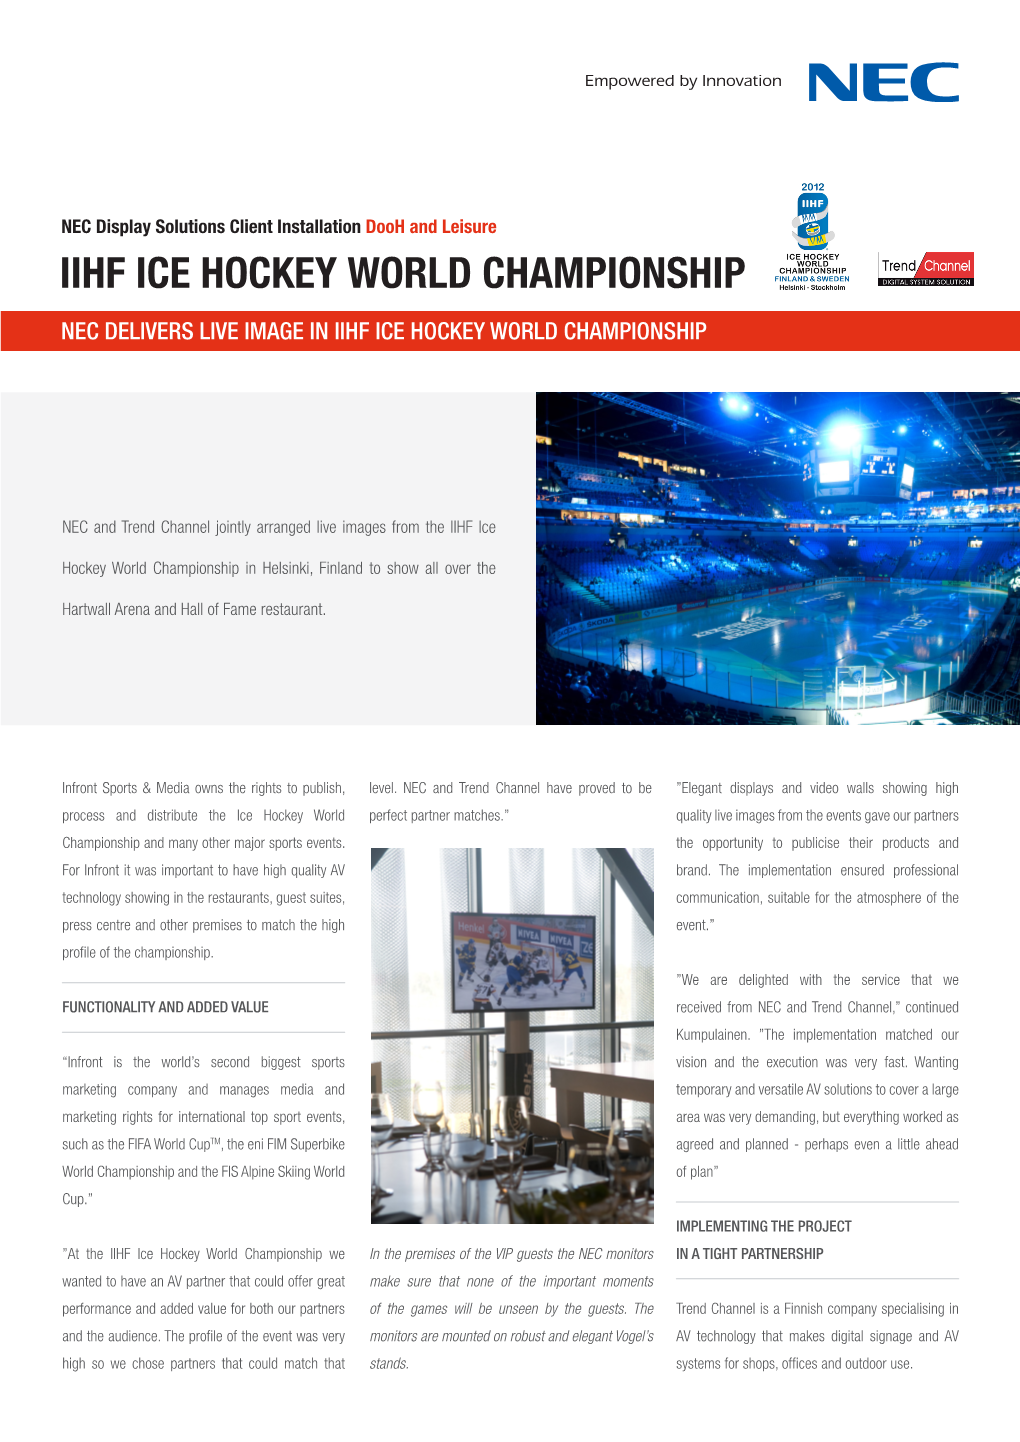 Iihf Ice Hockey World Championship Nec Delivers Live Image in Iihf Ice Hockey World Championship